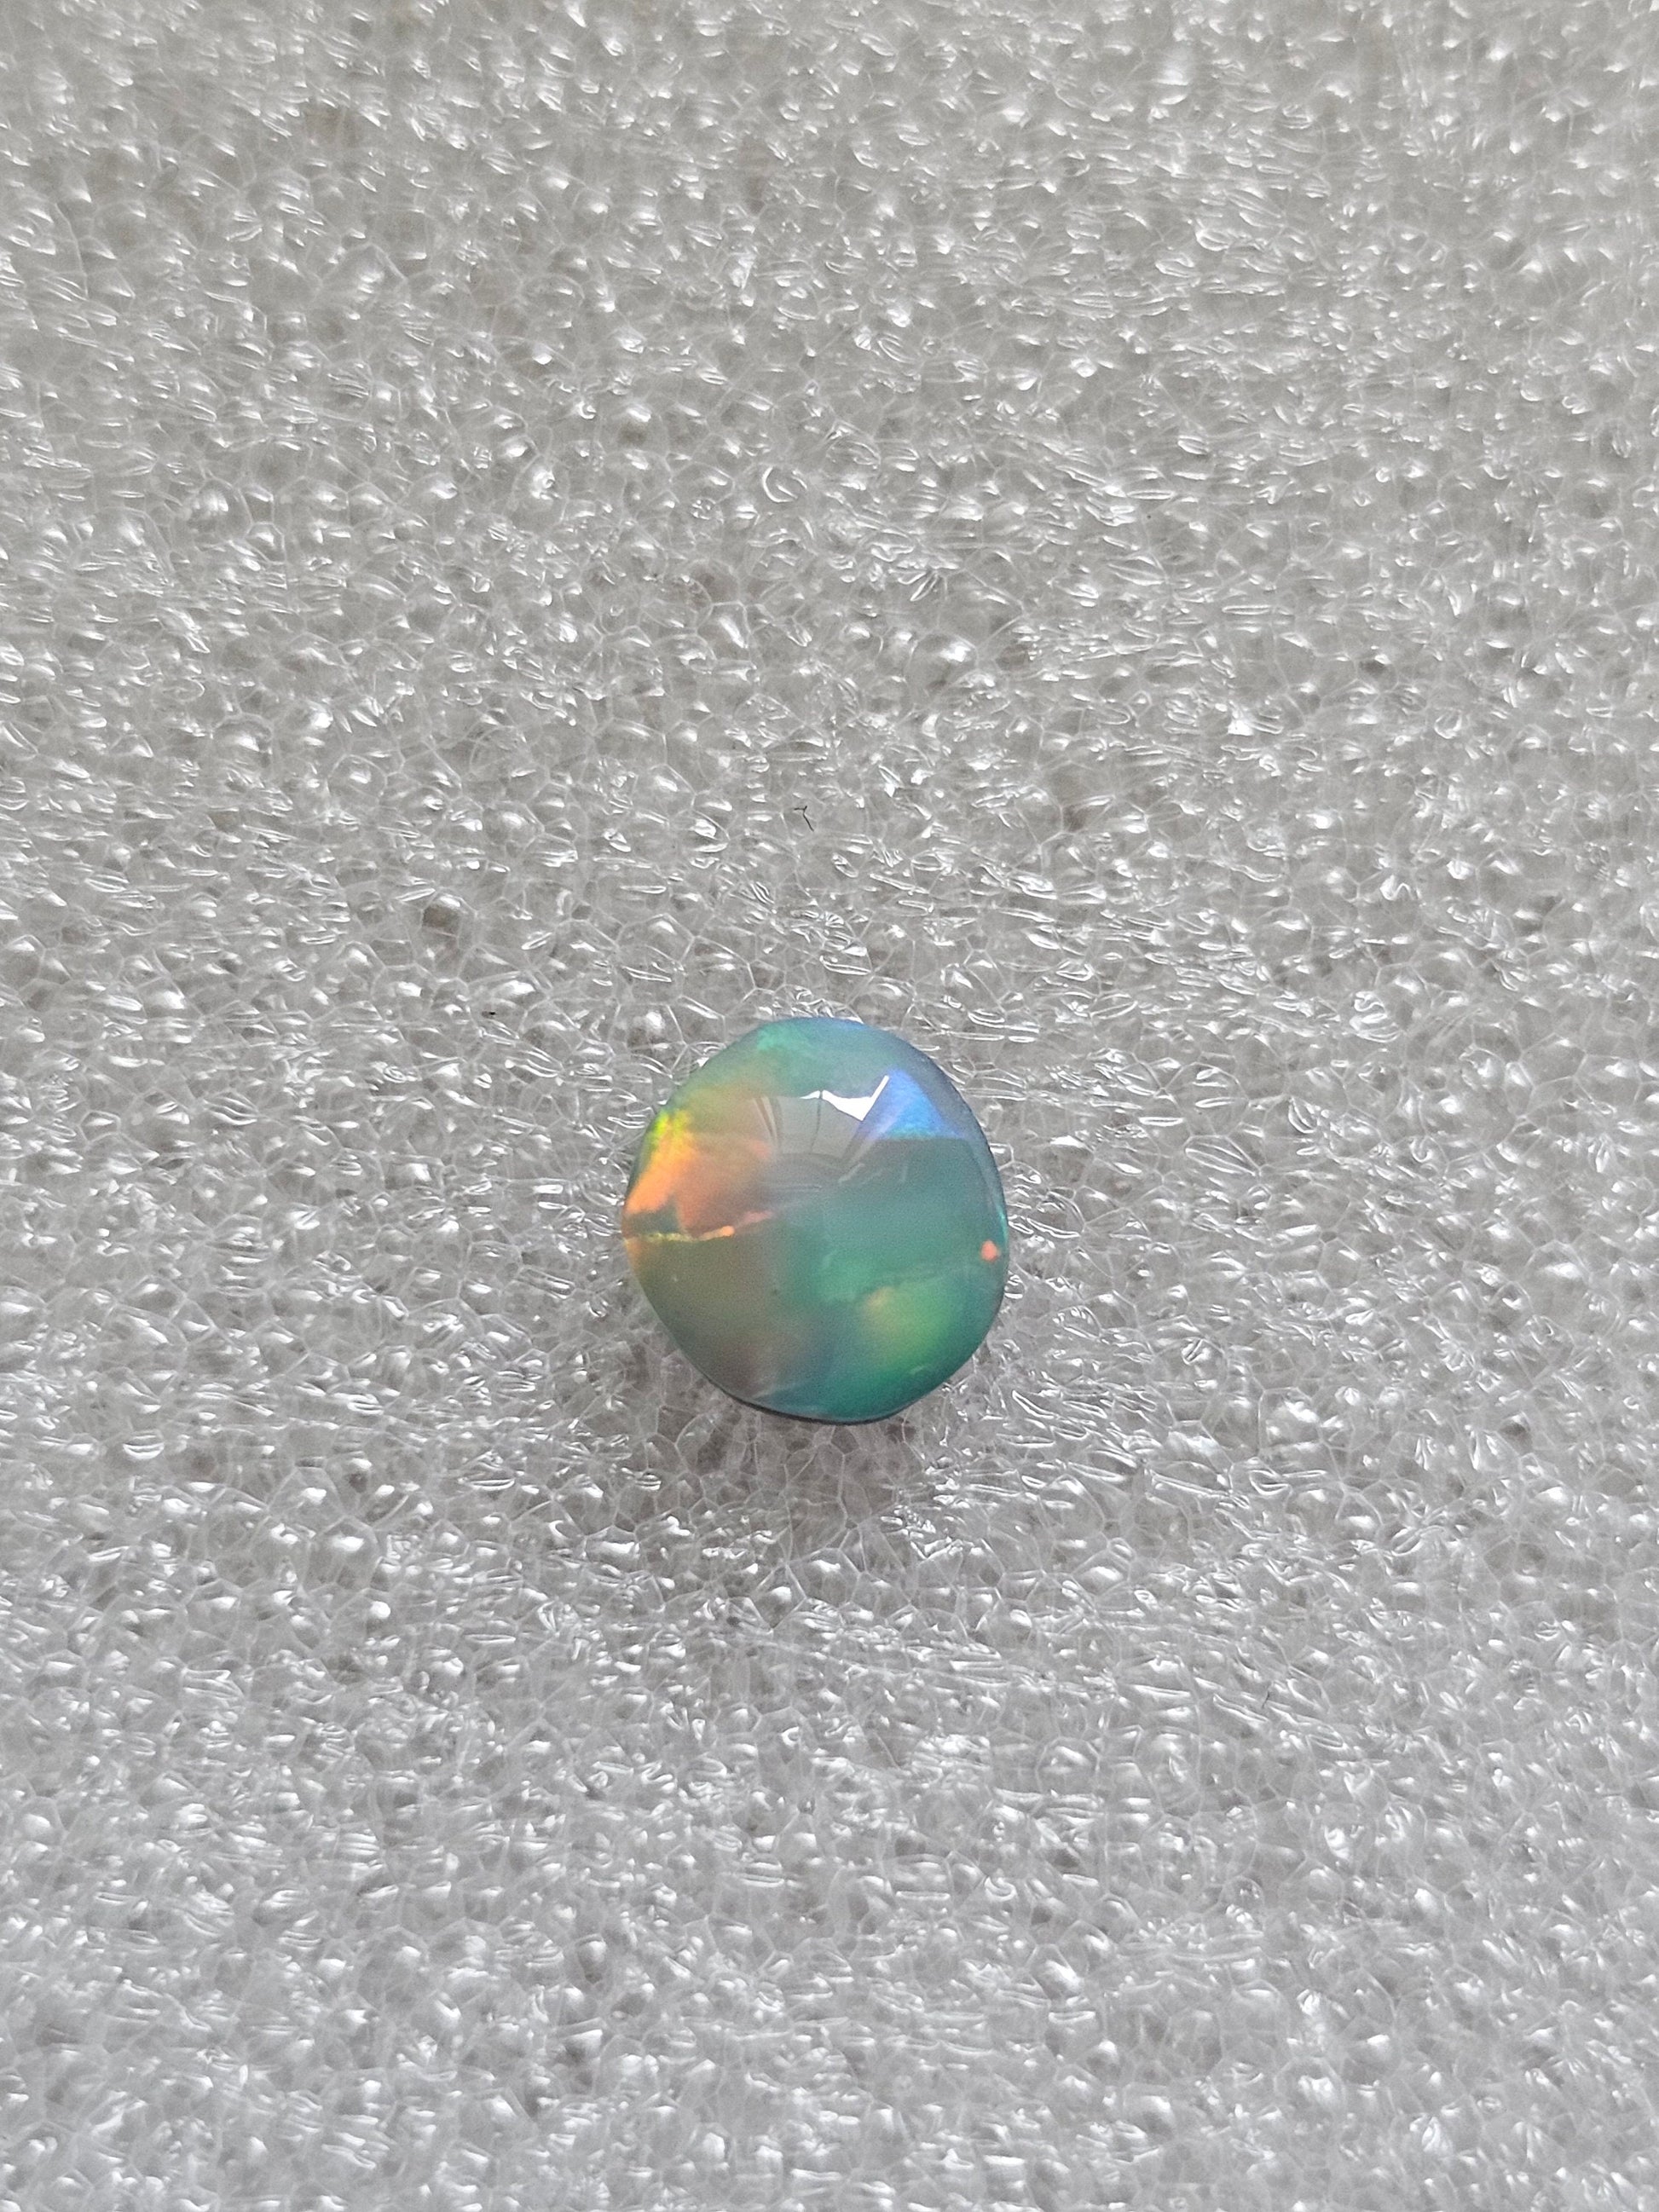 Australian doublet opal / roundish black opal / Lightning ridge Opal NSW